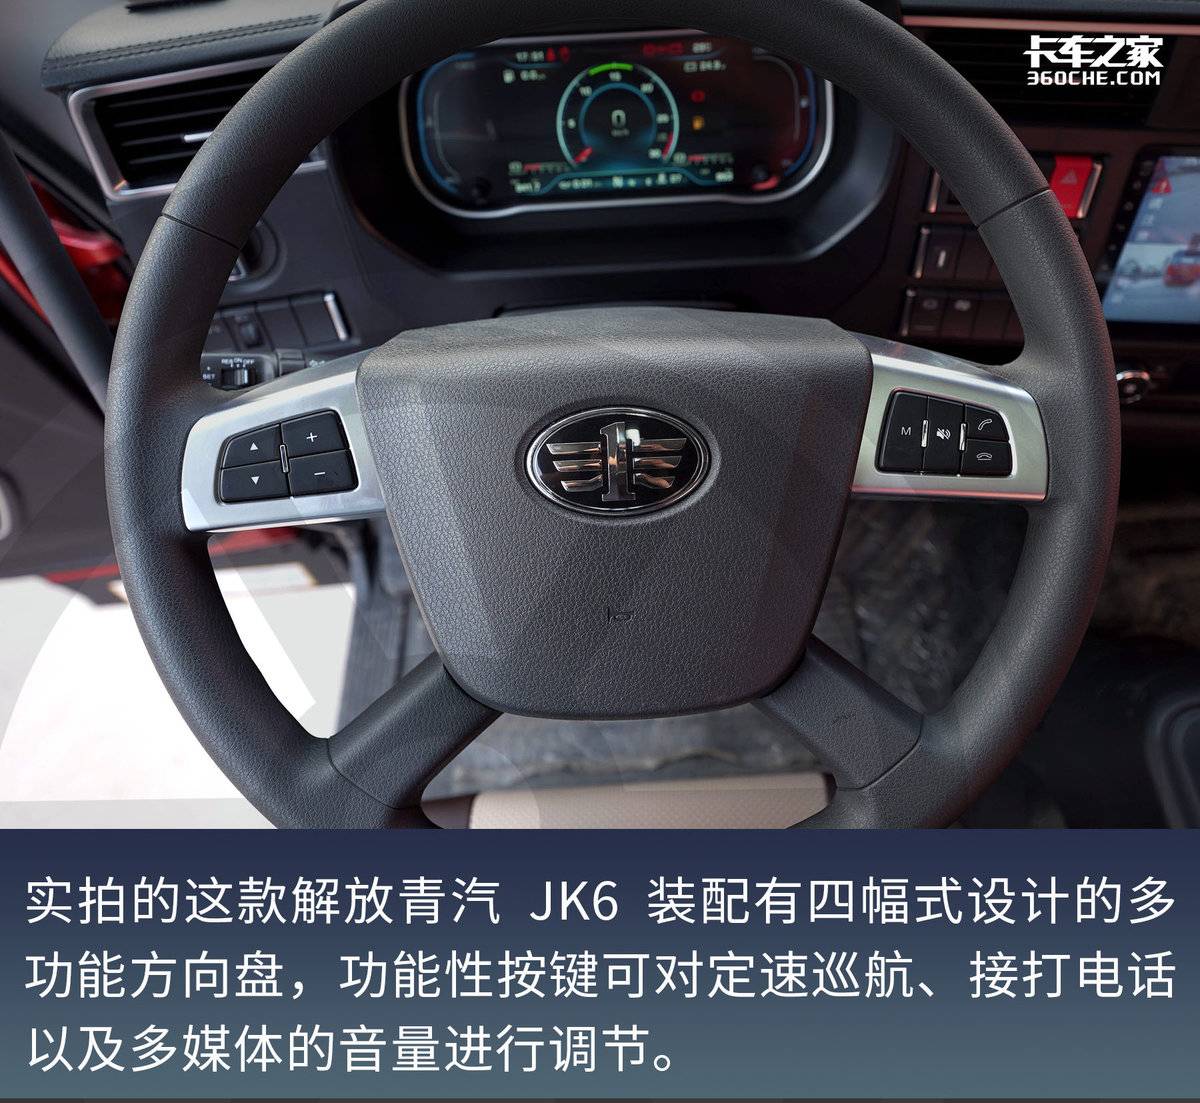 高顶双卧超宽卧铺搭配自动挡 260马力解放青汽JK6仅售18万6